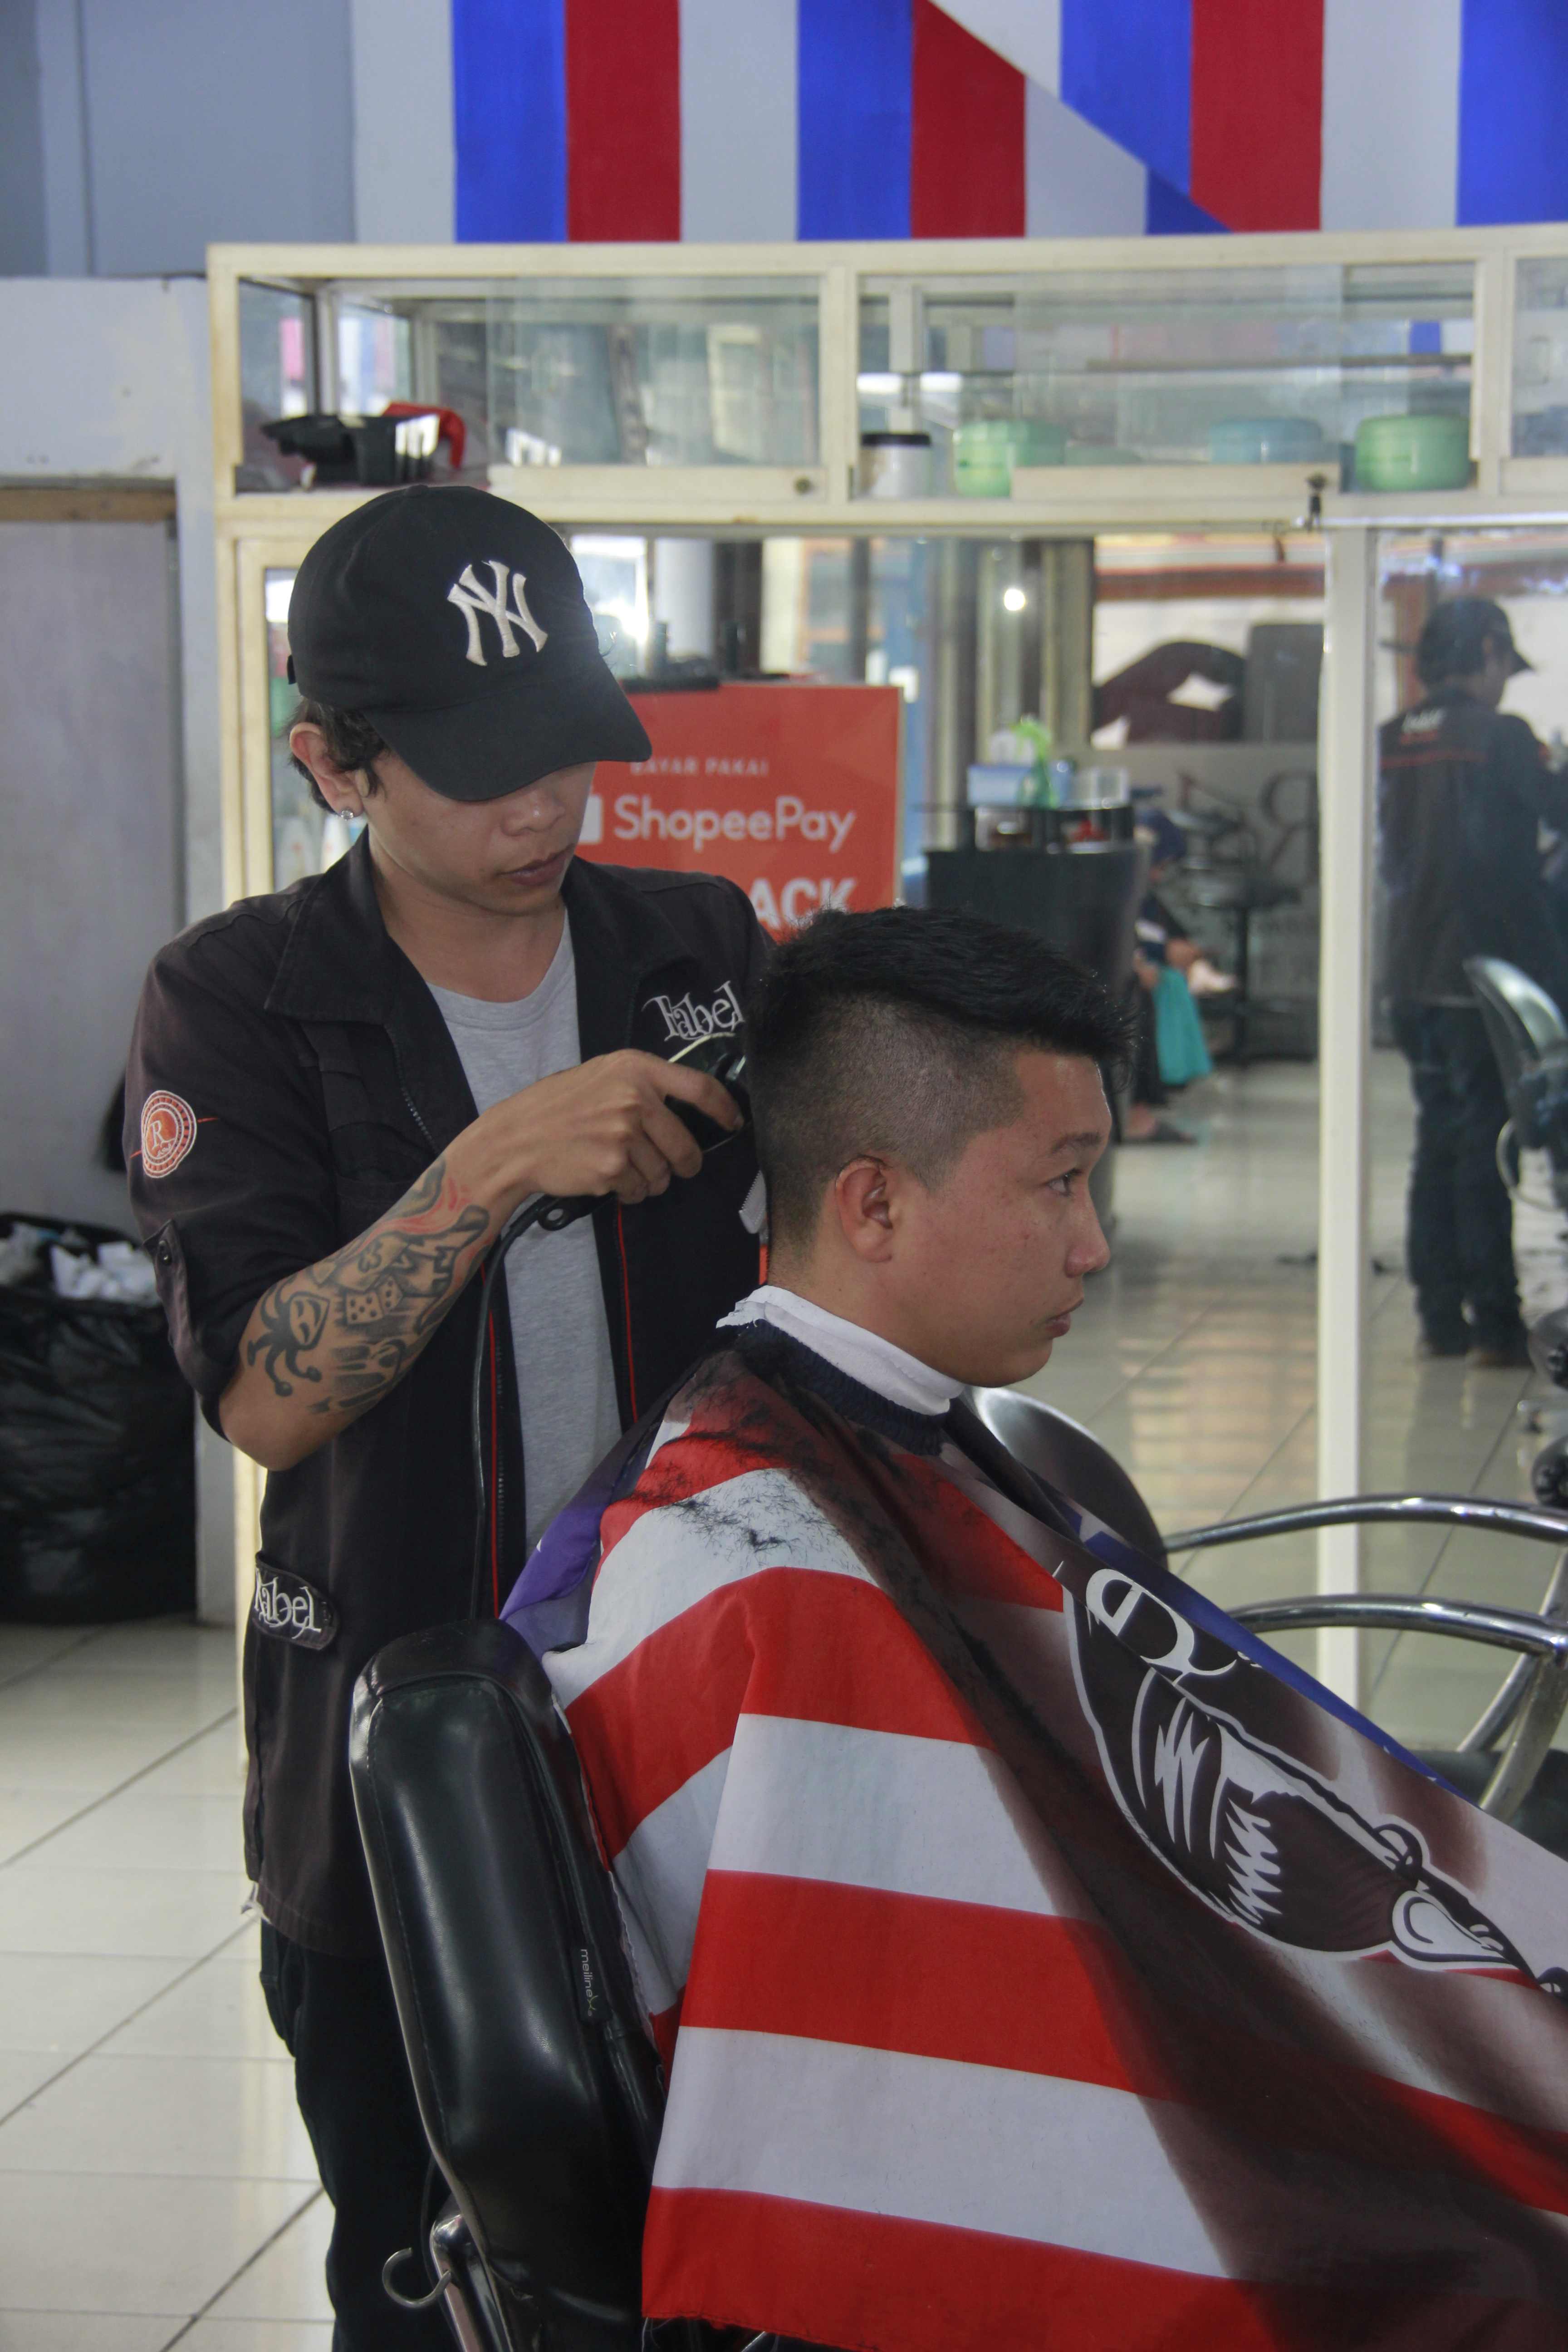 Rekomendasi Tempat Cukur Rambut Di Jl. Tumenggung Suryo 2023